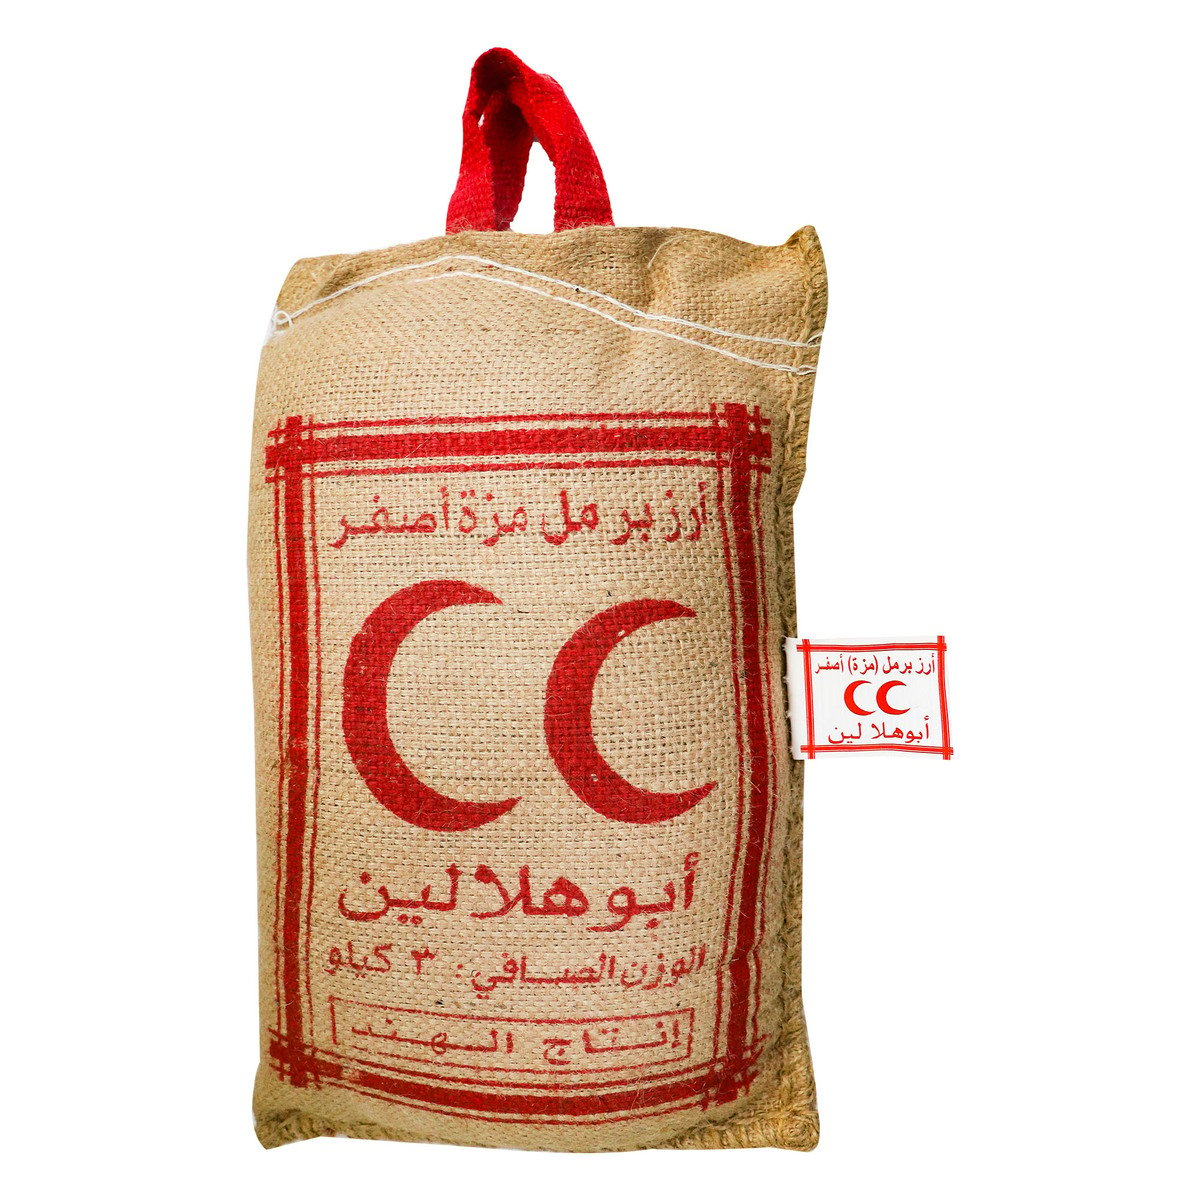 Abu Hilalain Parmal Sella Rice 3kg